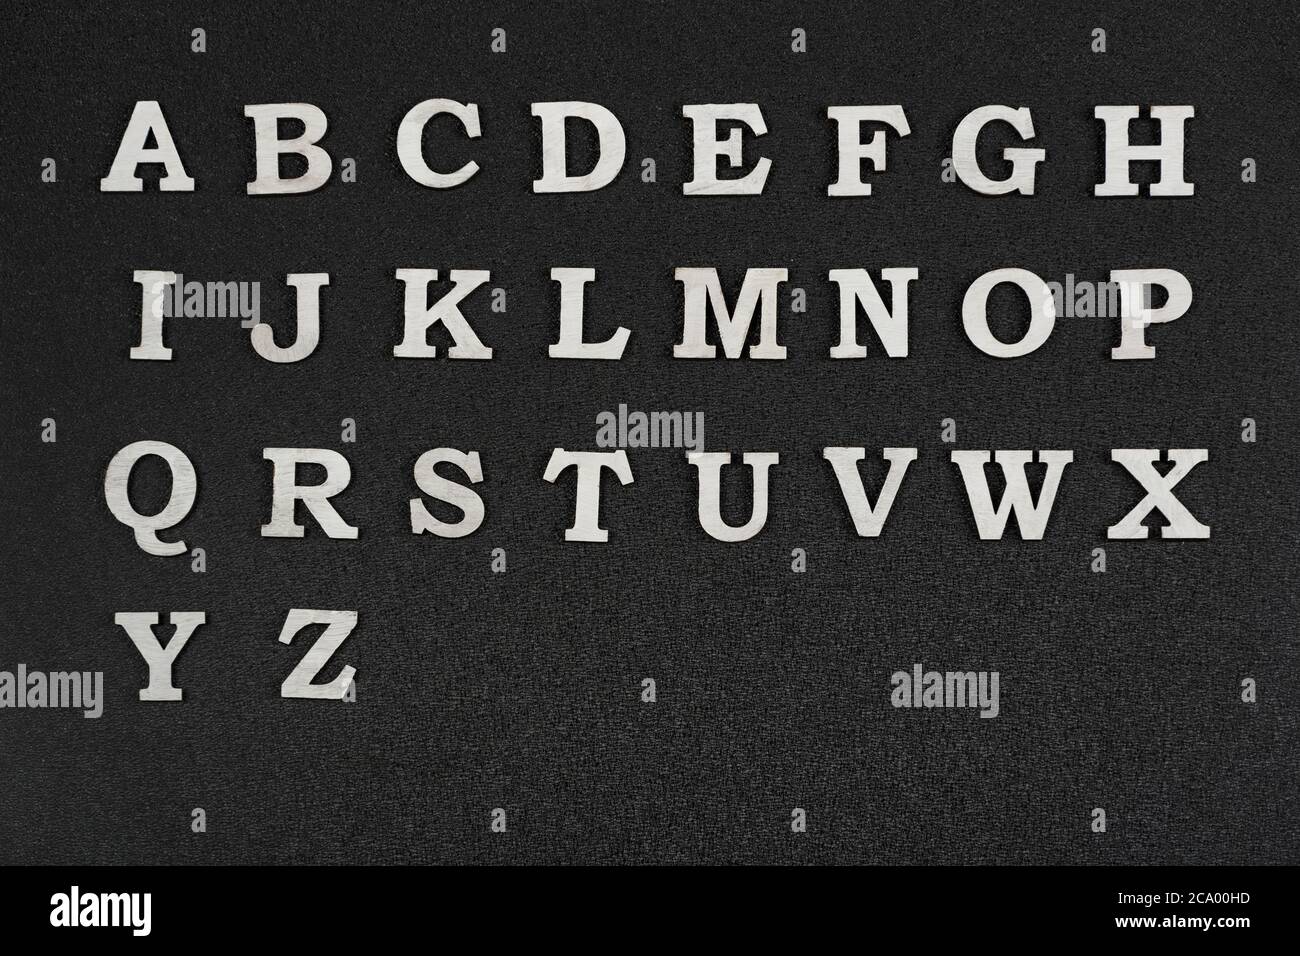 Lettere alfabetiche su sfondo nero. Lettere A-Z in ordine alfabetico. Foto Stock